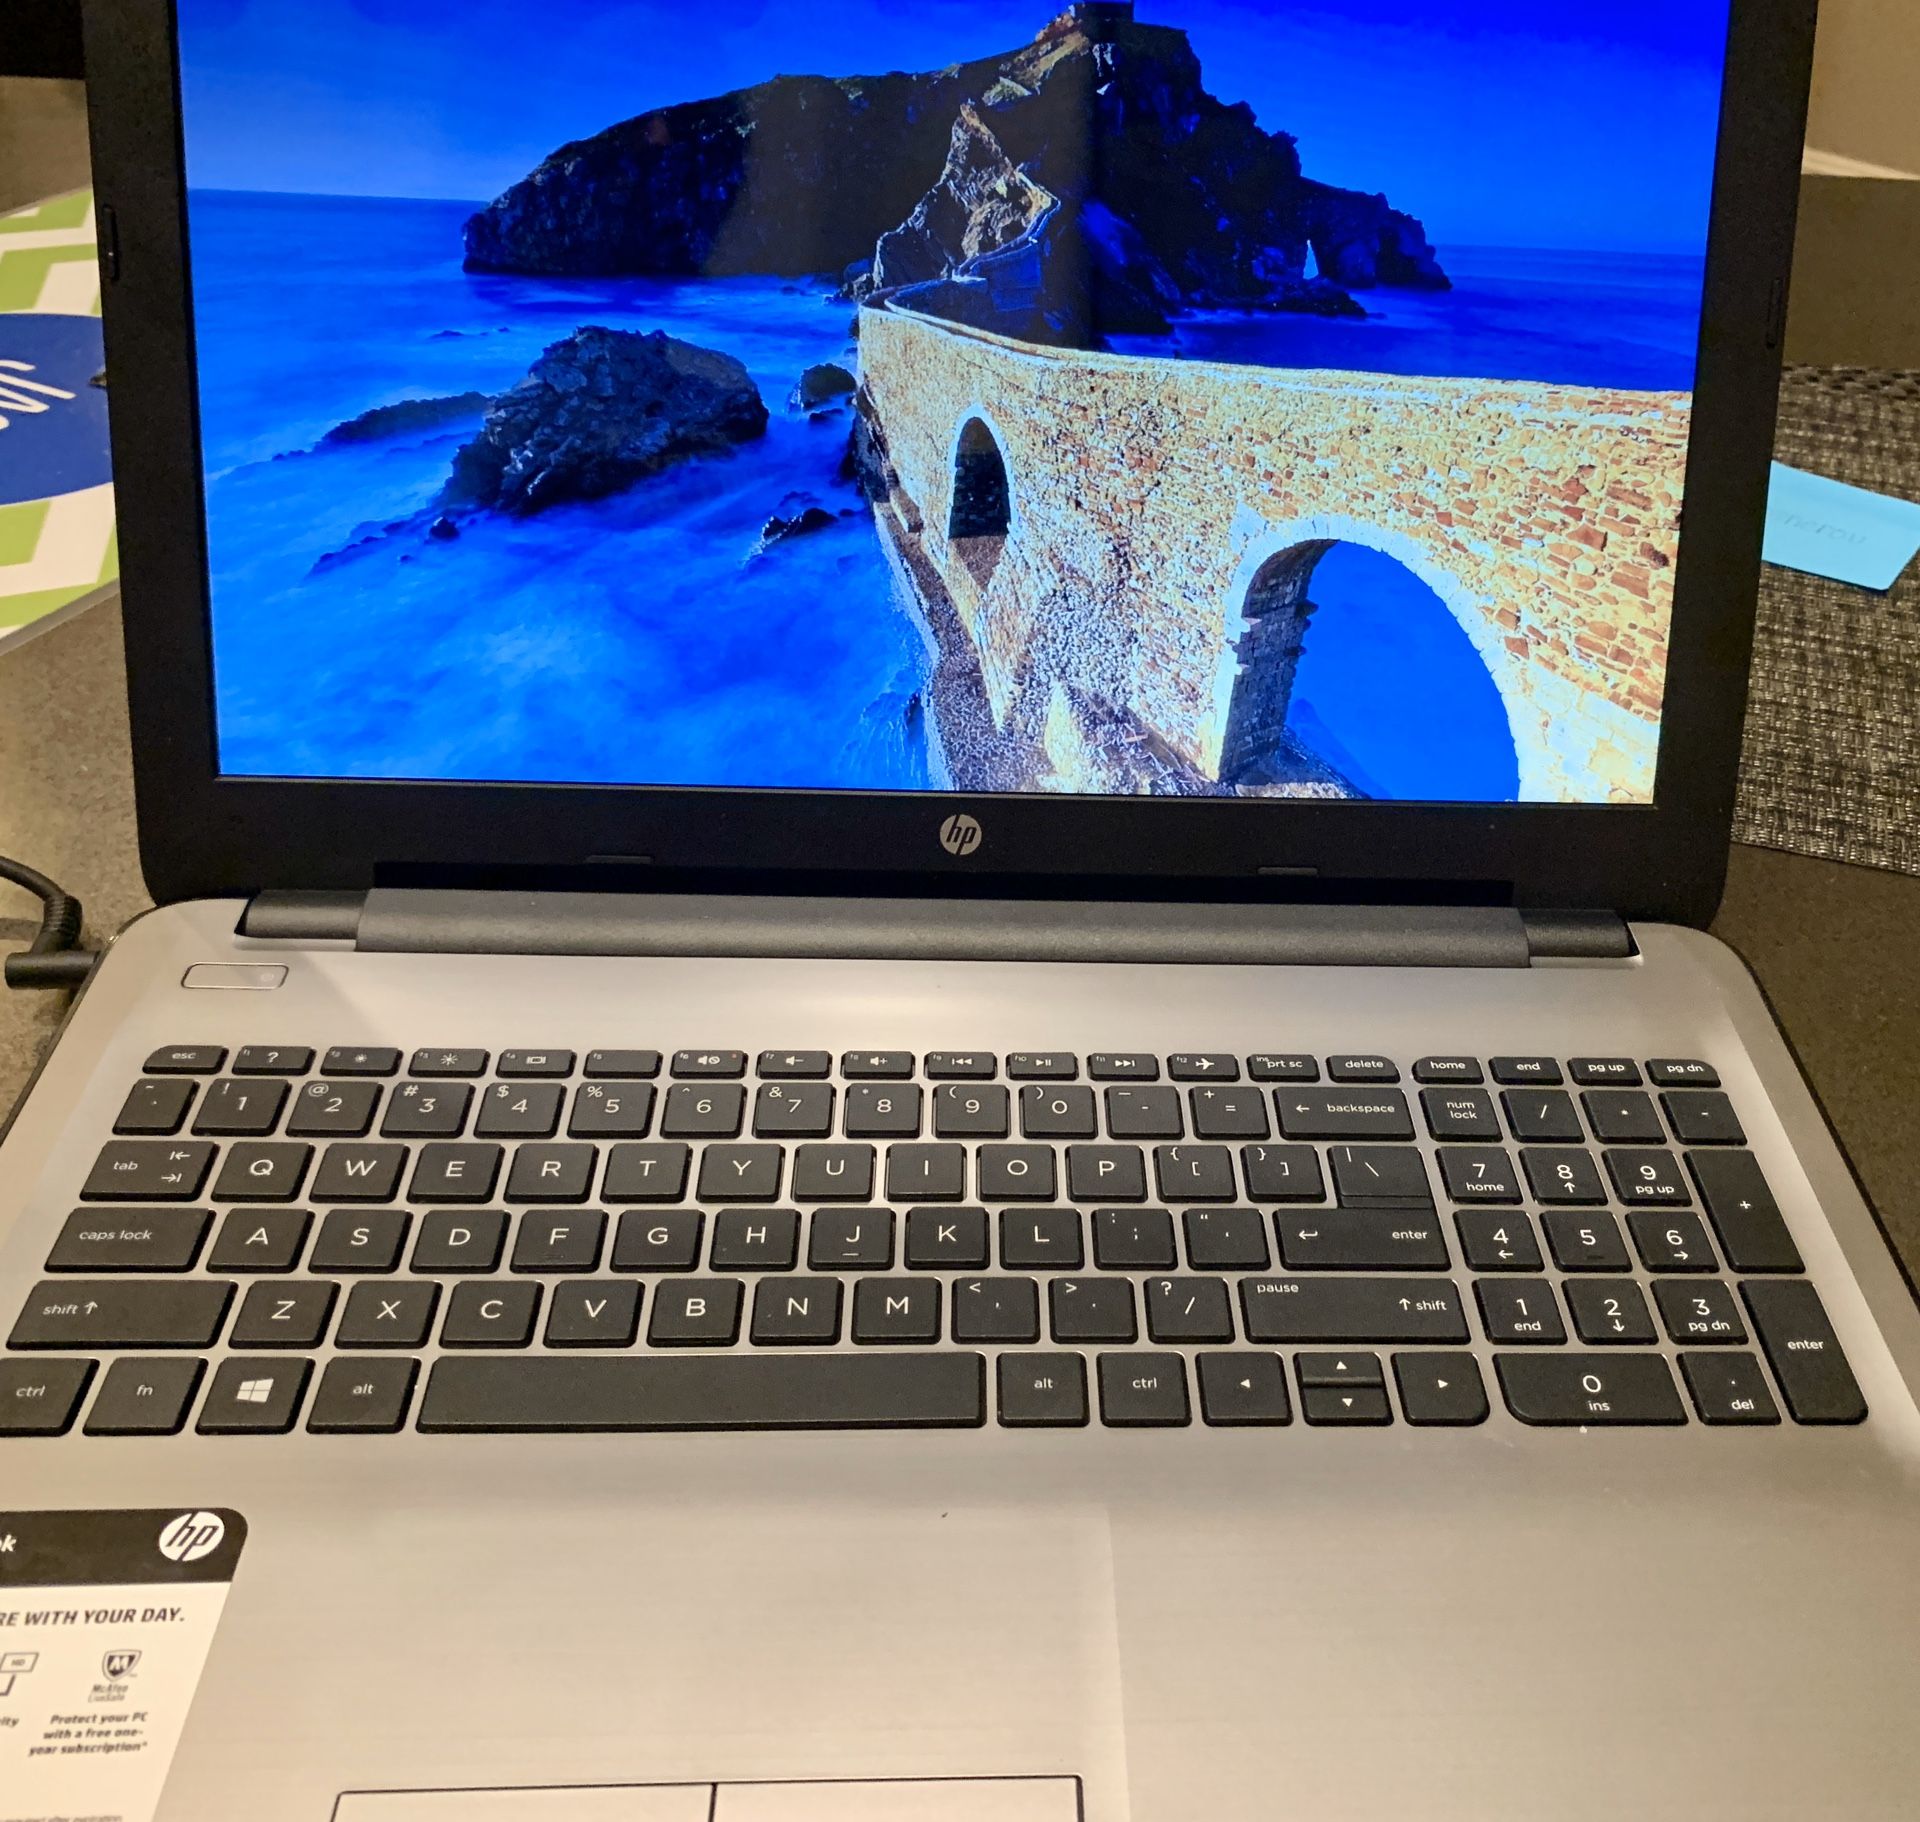 Hewlett-Packard Notebook Laptop - great condition